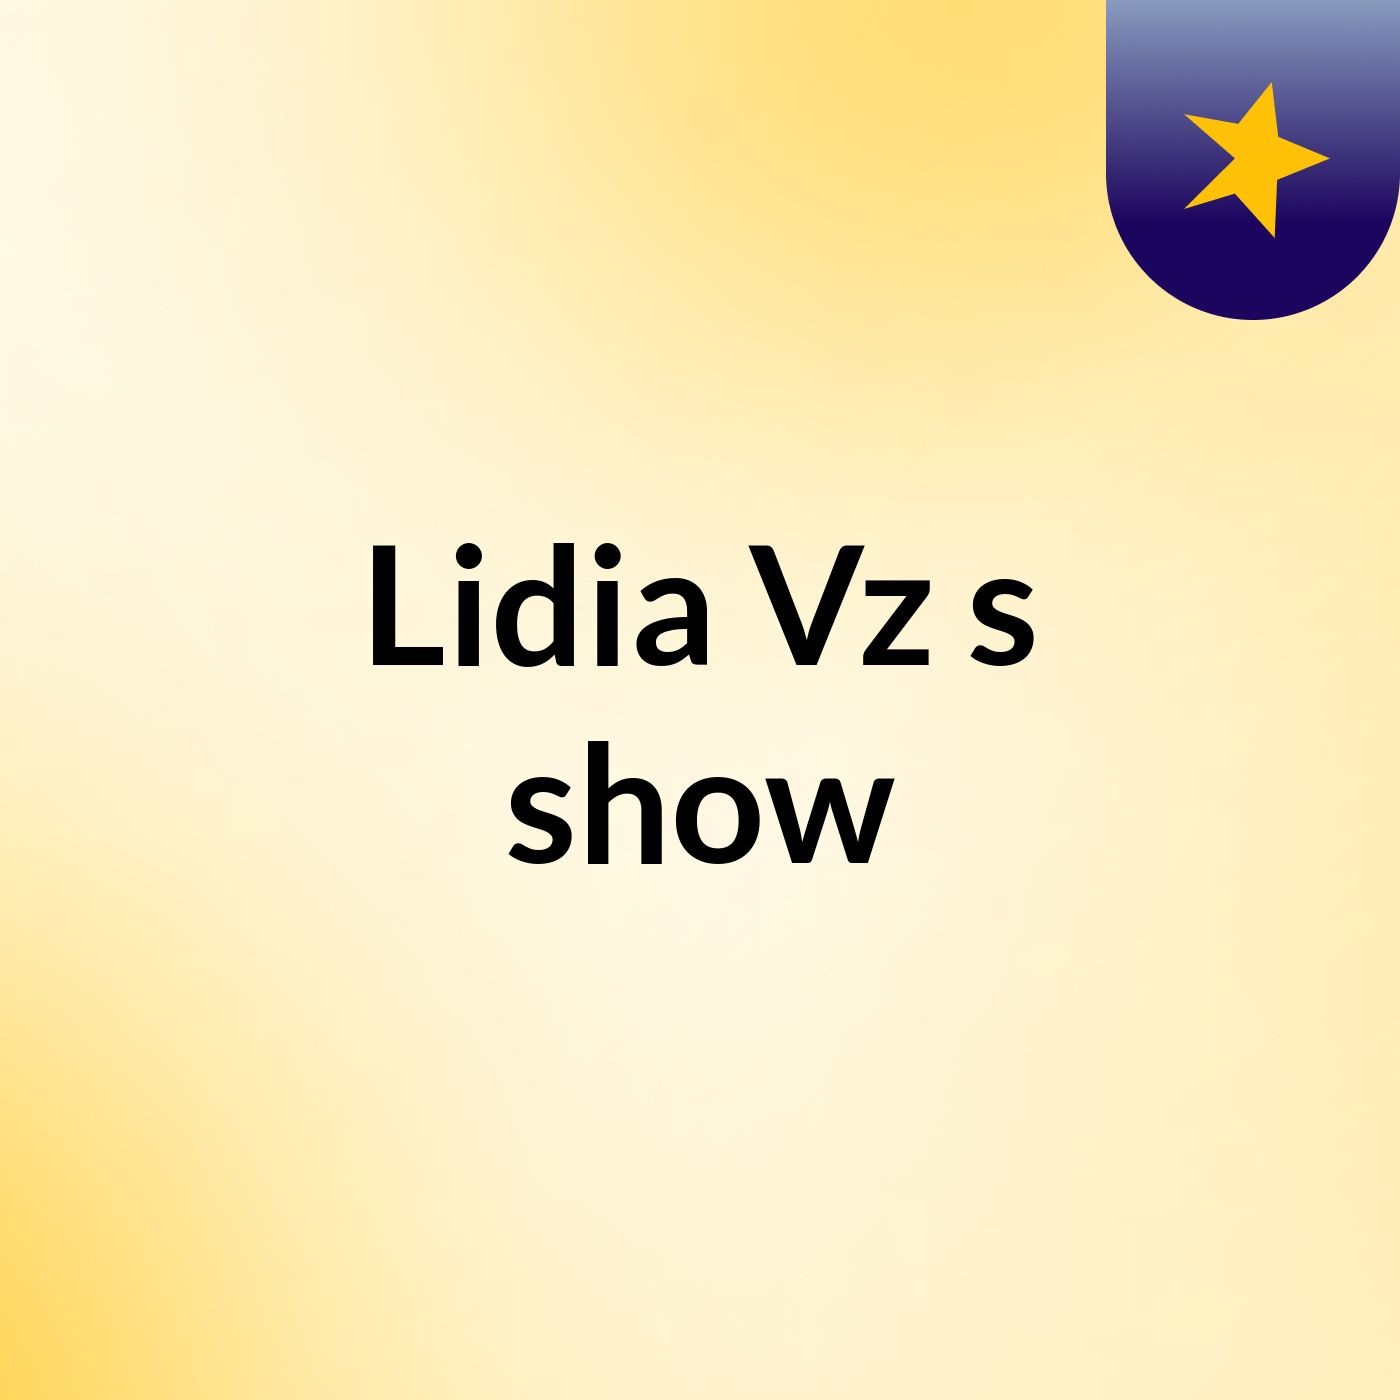 Lidia Vz's show